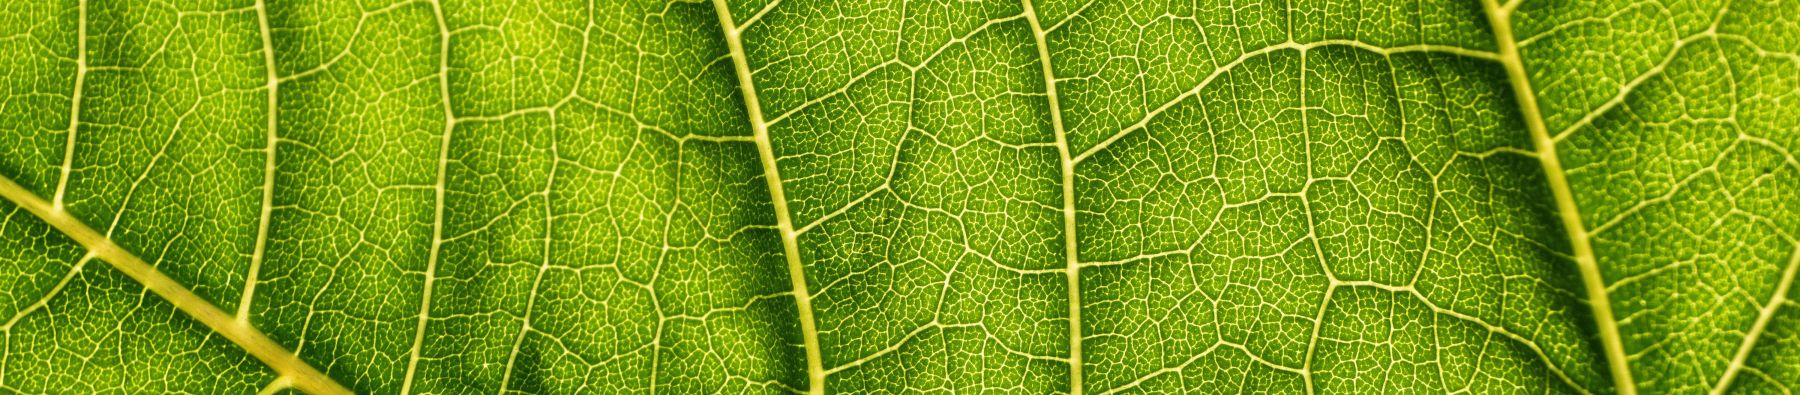 A closeup of a leaf